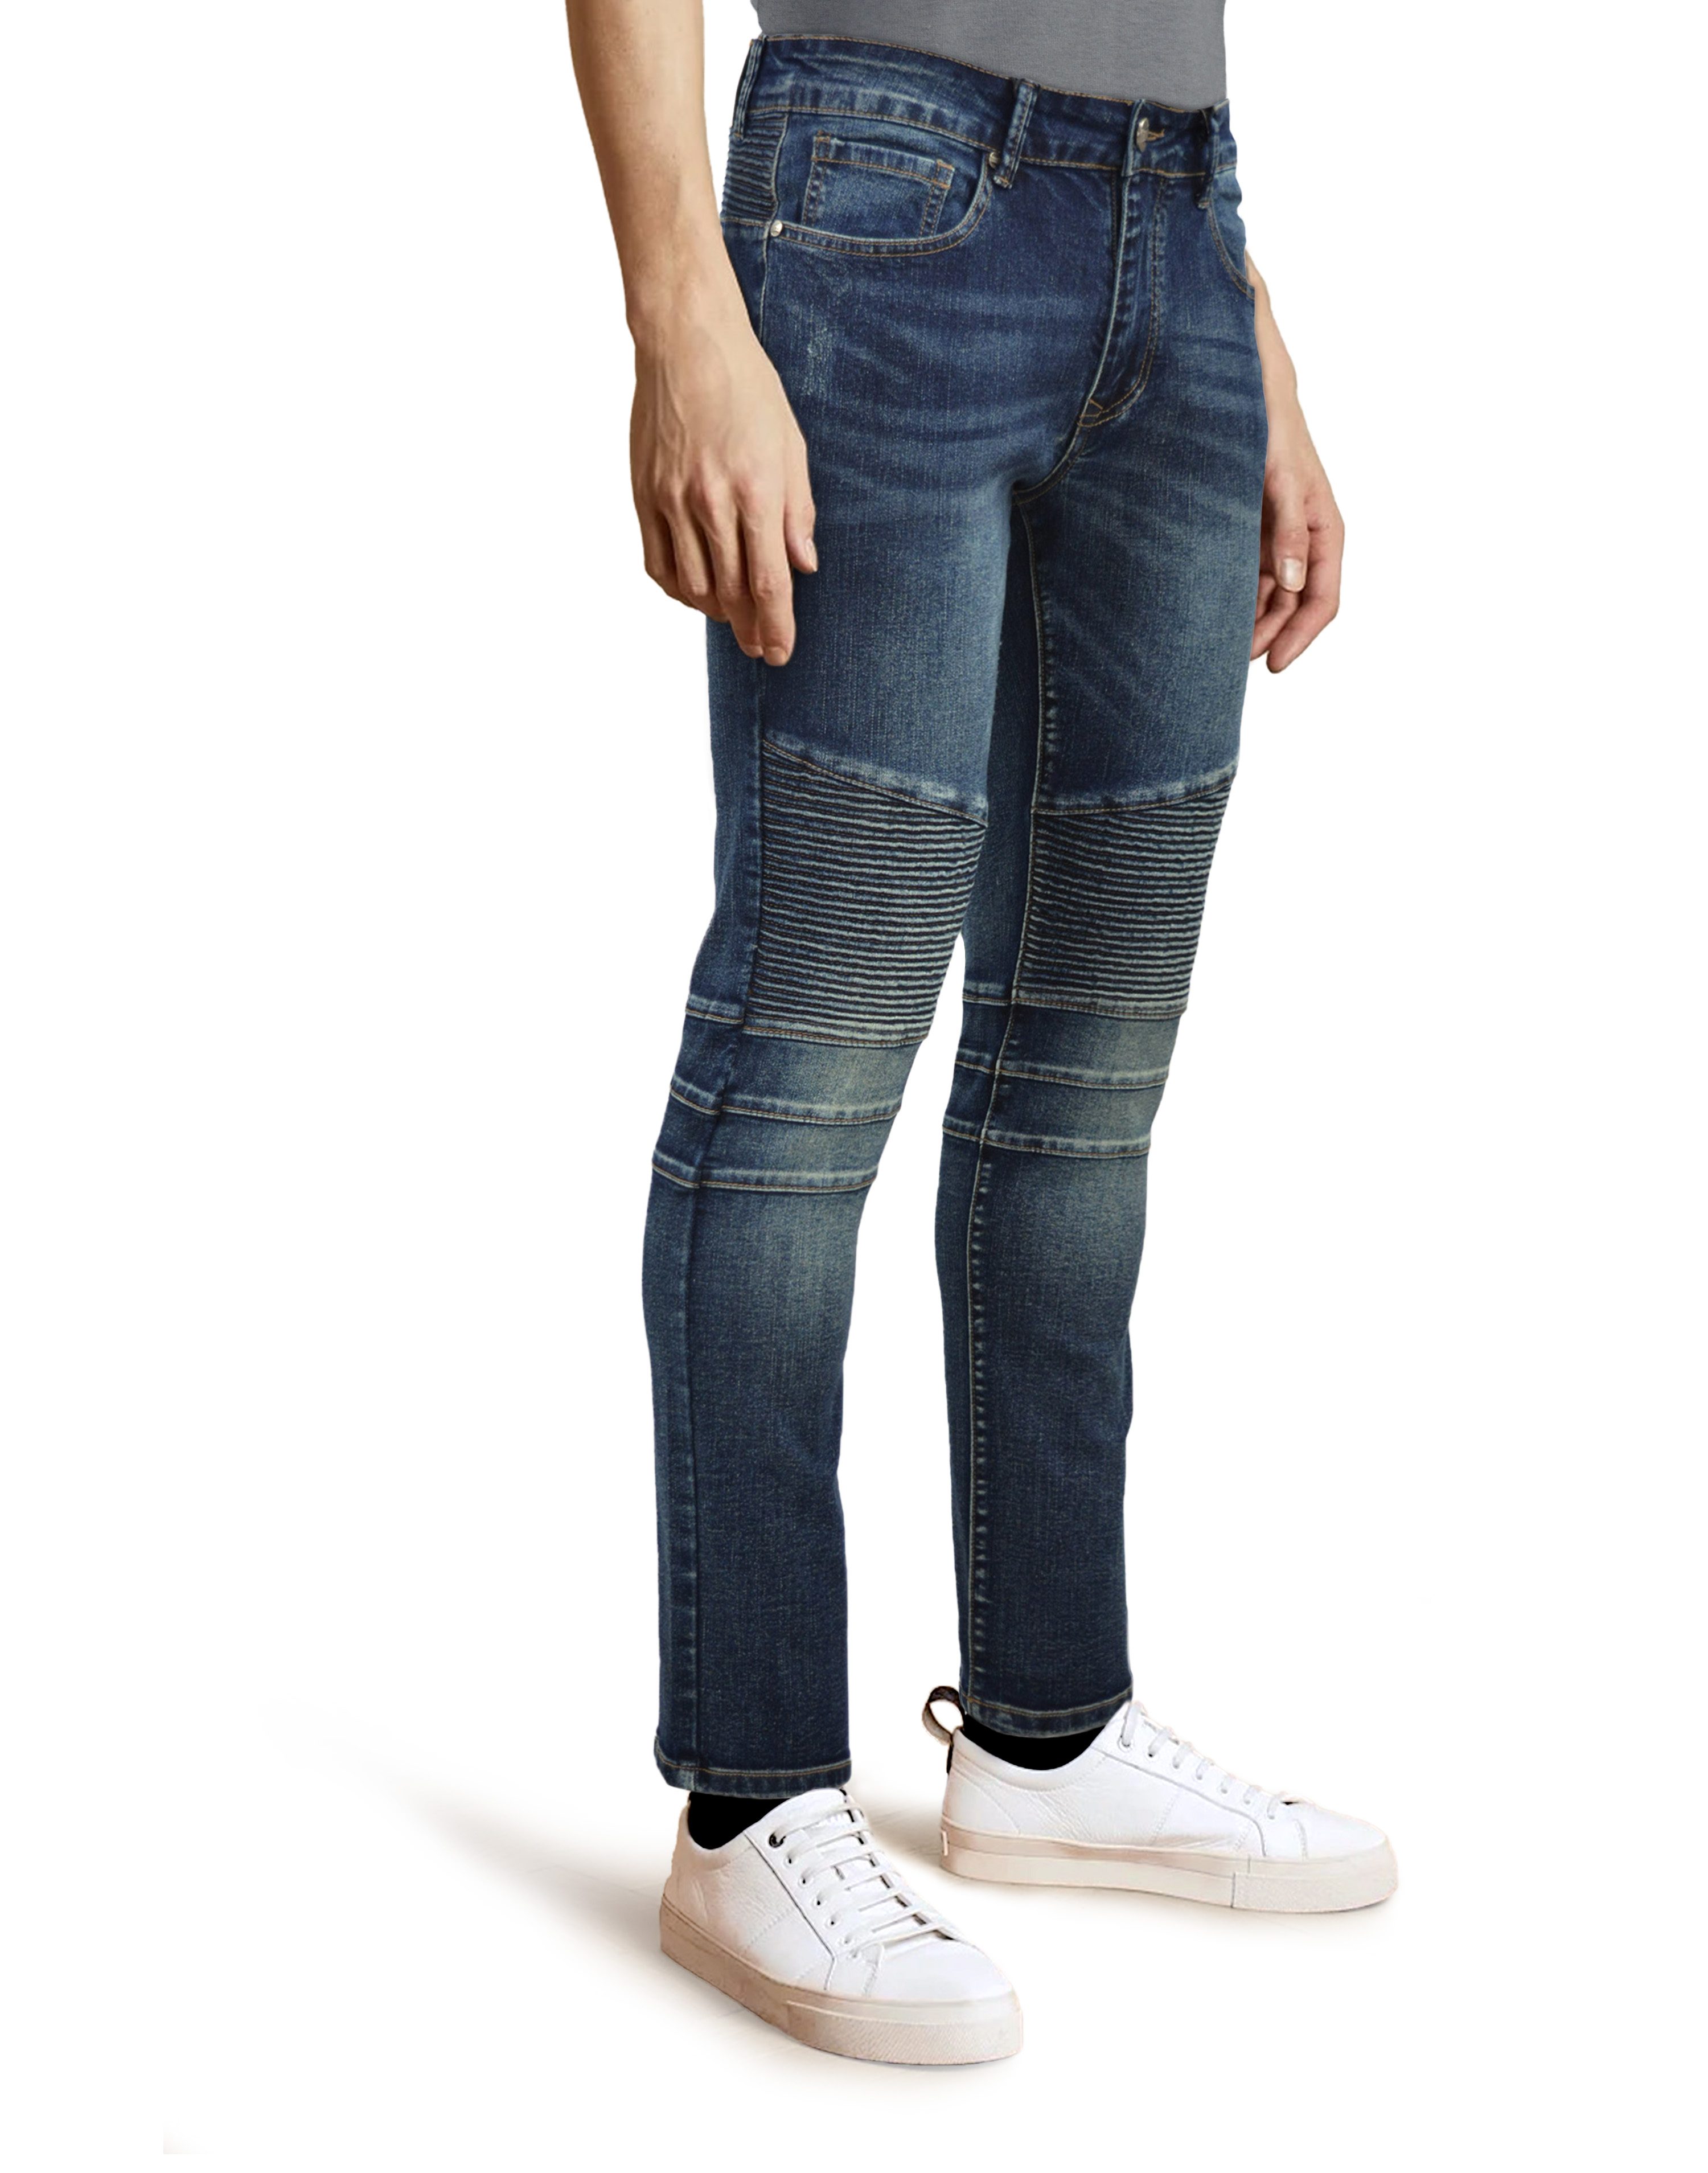 RAW X Men's Slim Fit Skinny Biker Jean, Comfy Flex Stretch Moto Wash Rip Distressed Denim Jeans Pants - image 2 of 5